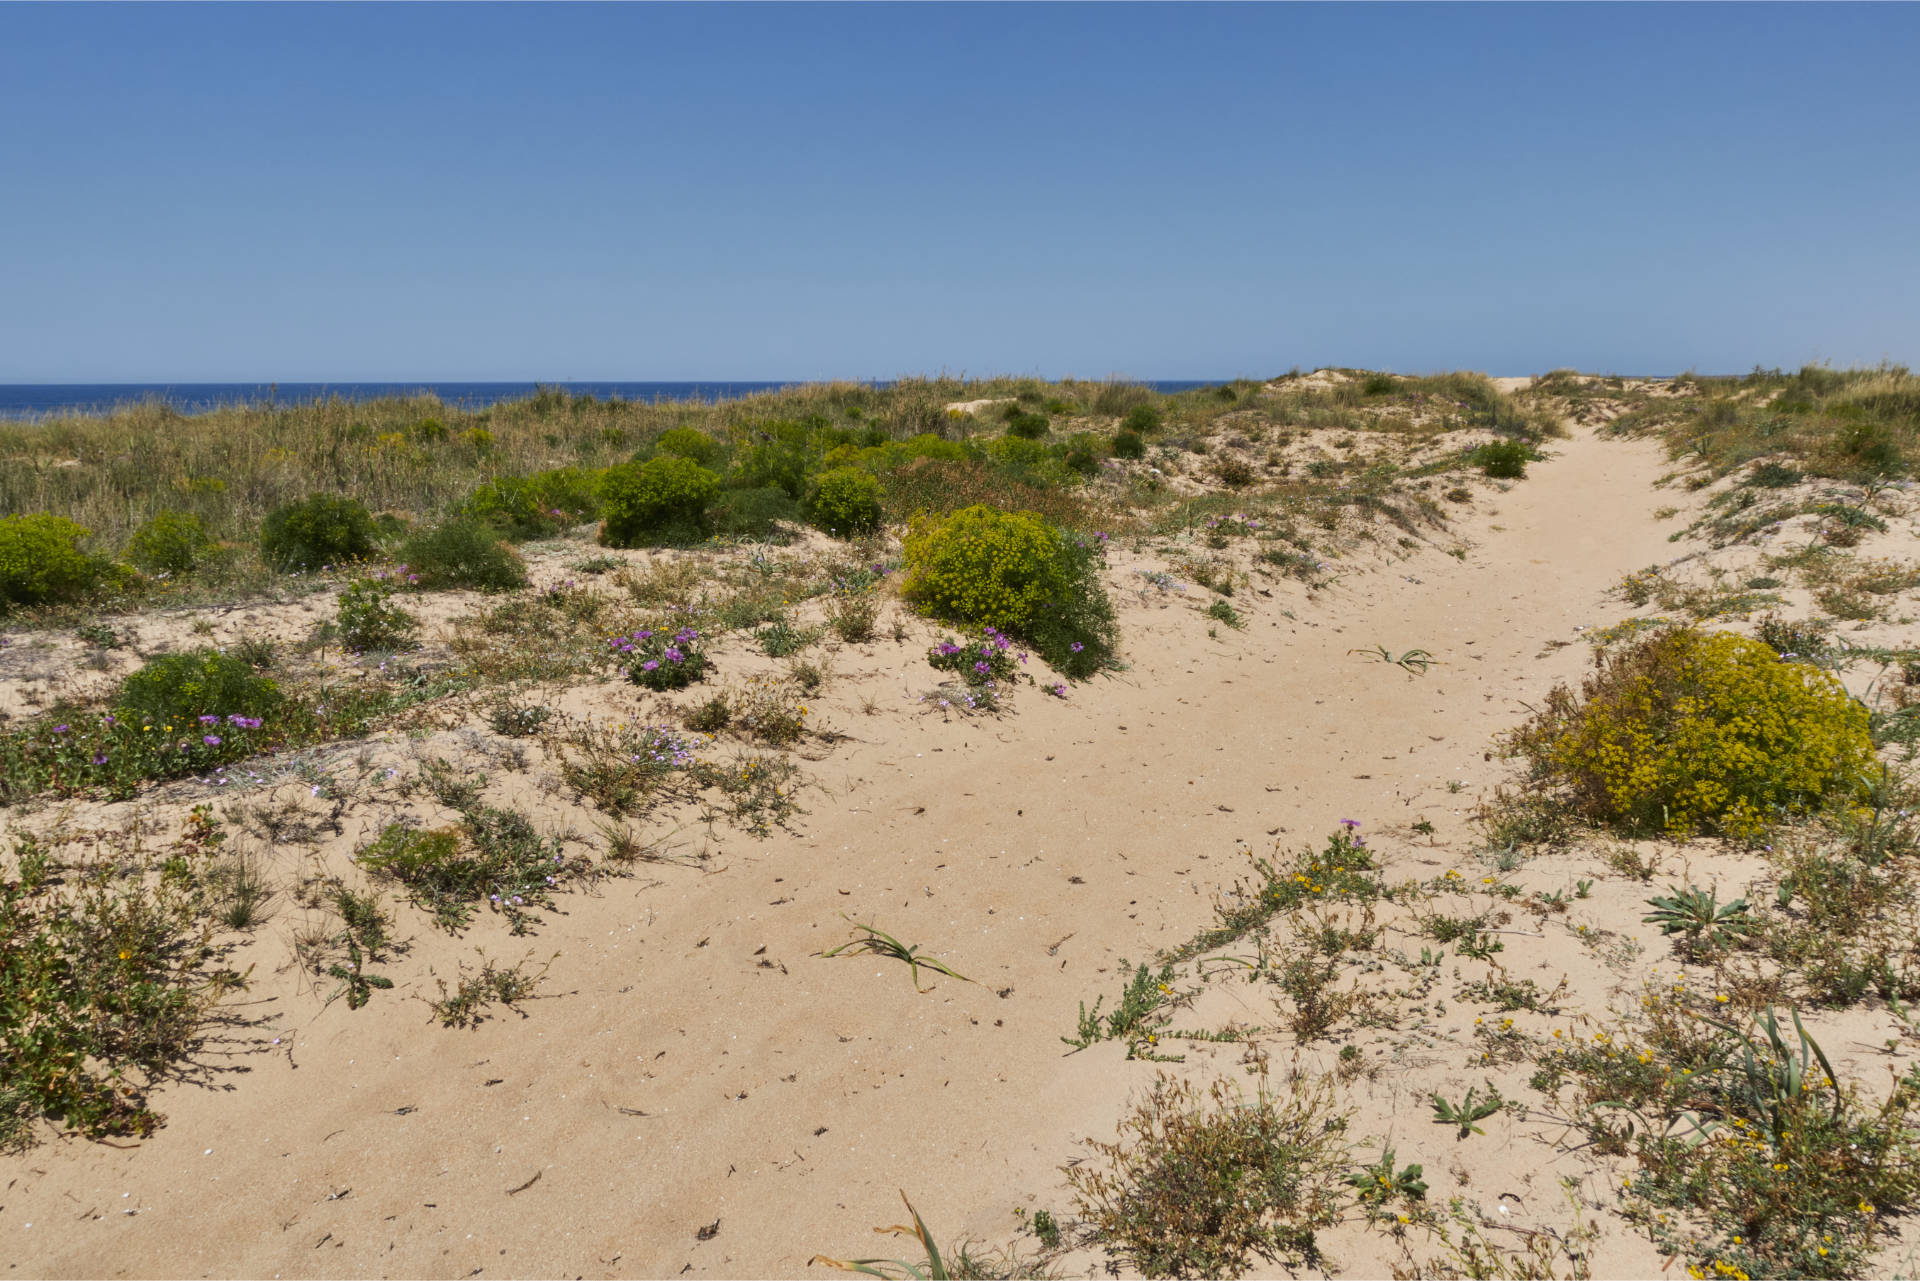 Durch Dünen und tiefen Sand von El Palmar nach El Atunar.